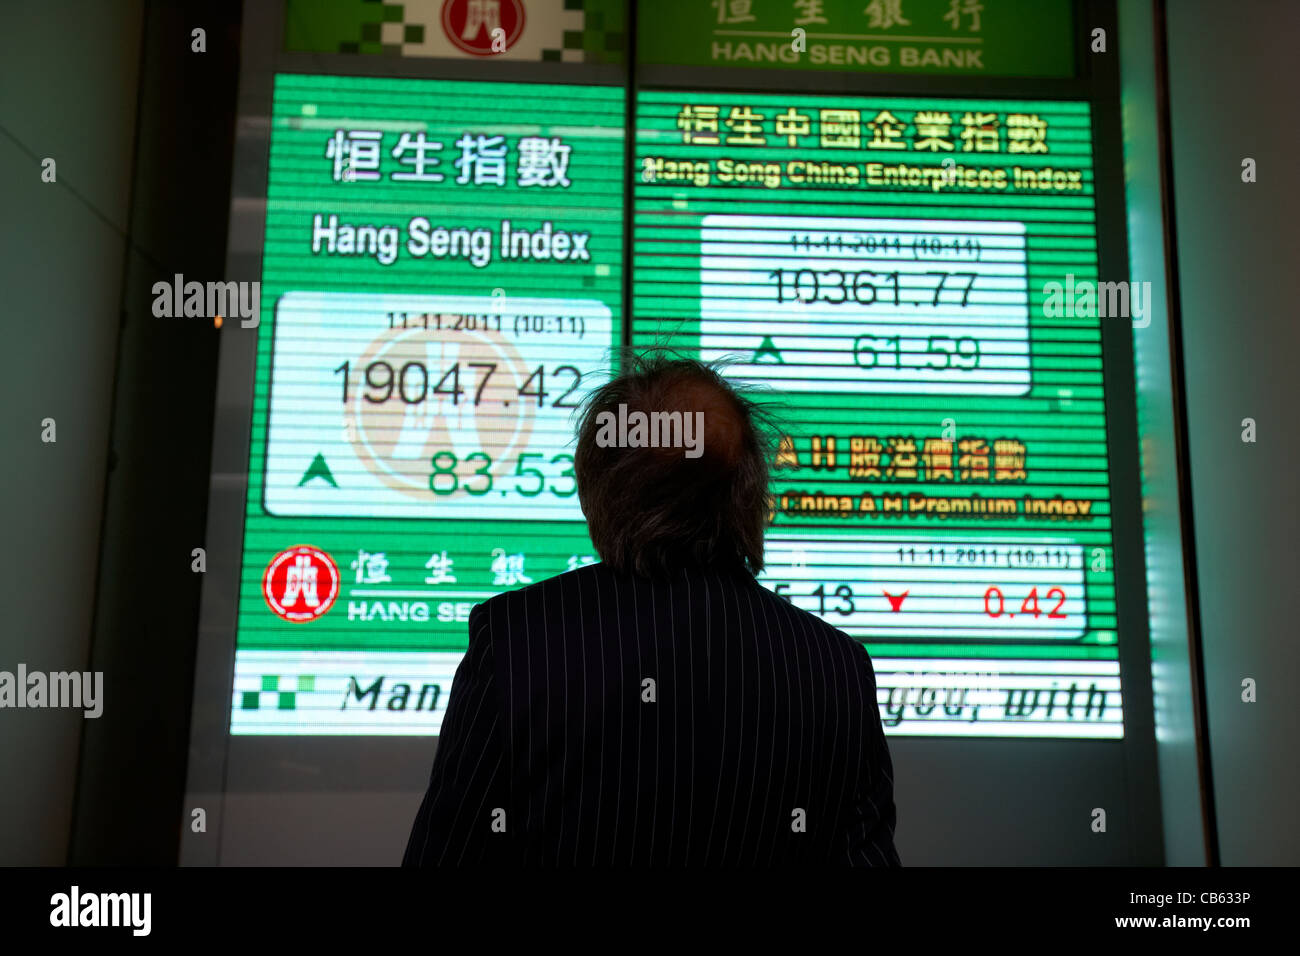 chinese businessman looking at hong kong stock index screen at the hang seng bank hq central district, hong kong island, hksar stock market global Stock Photo